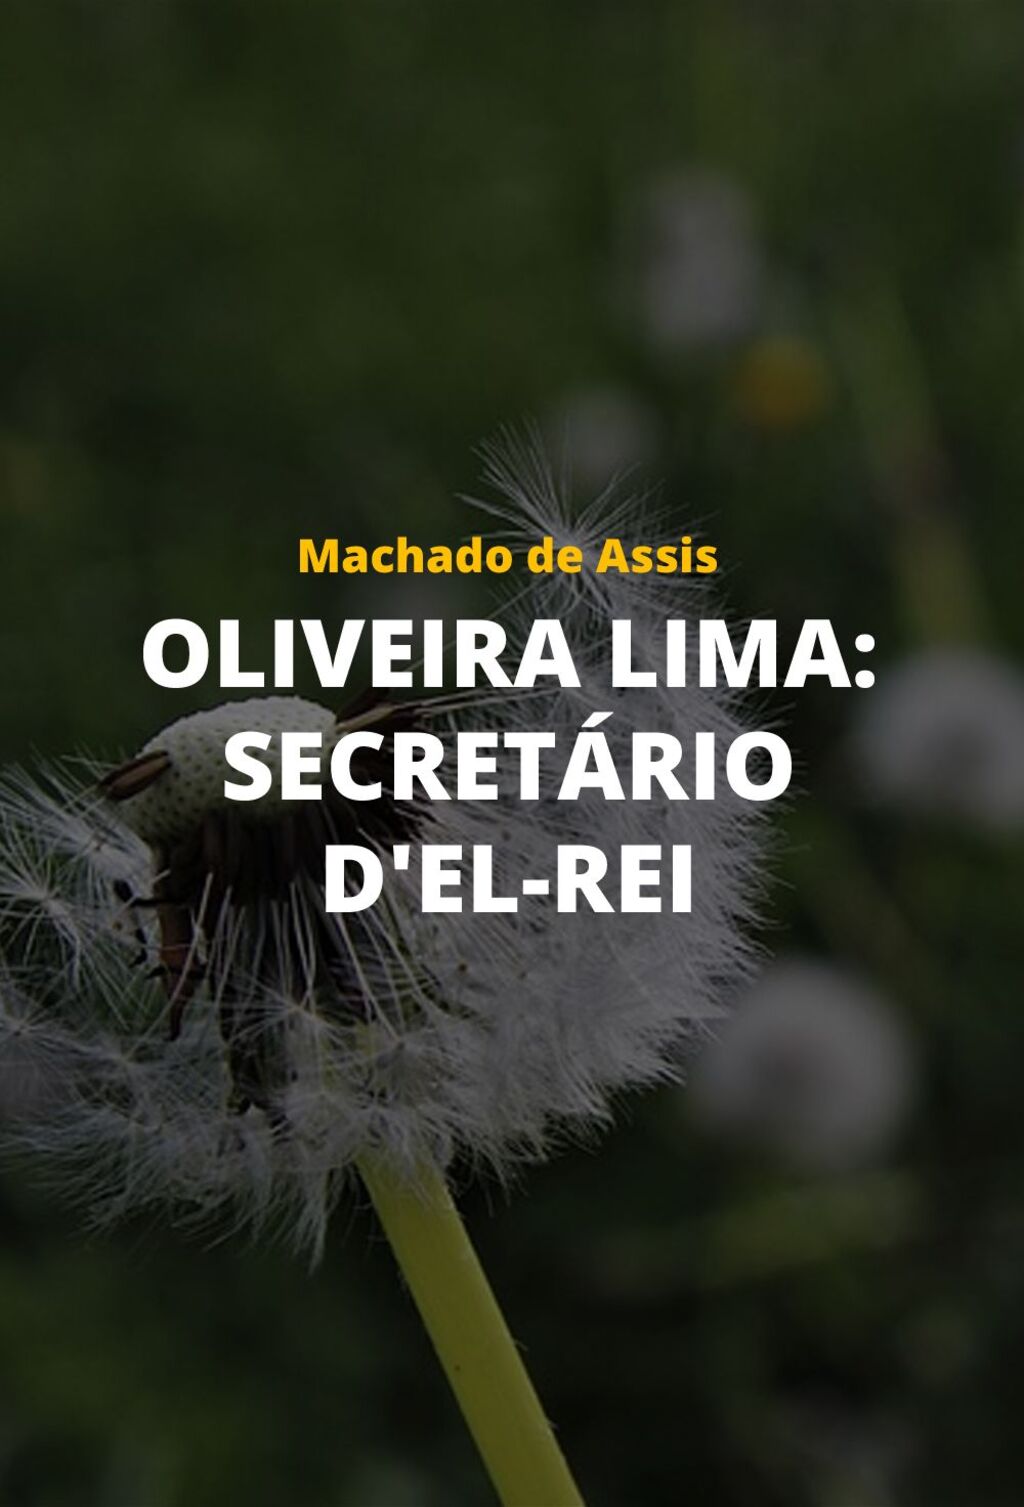 Oliveira Lima: Secretário d'el-rei